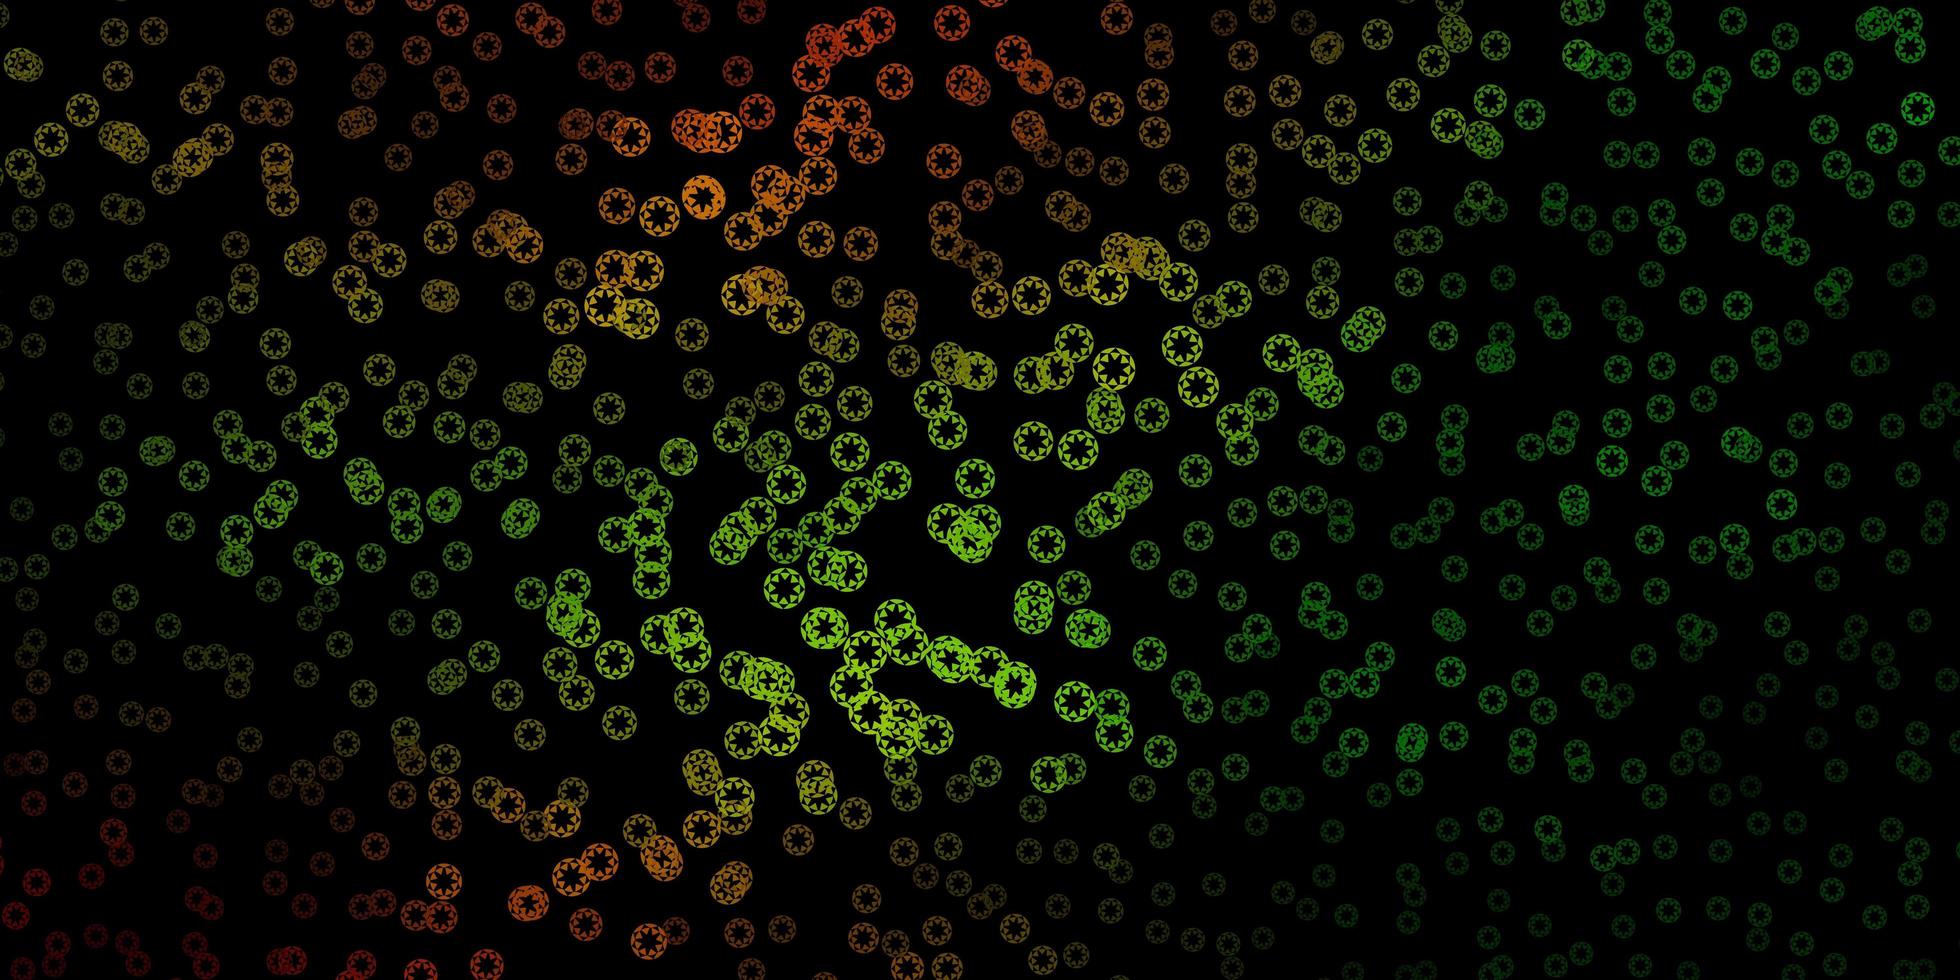 padrão de vetor verde e amarelo escuro com esferas.